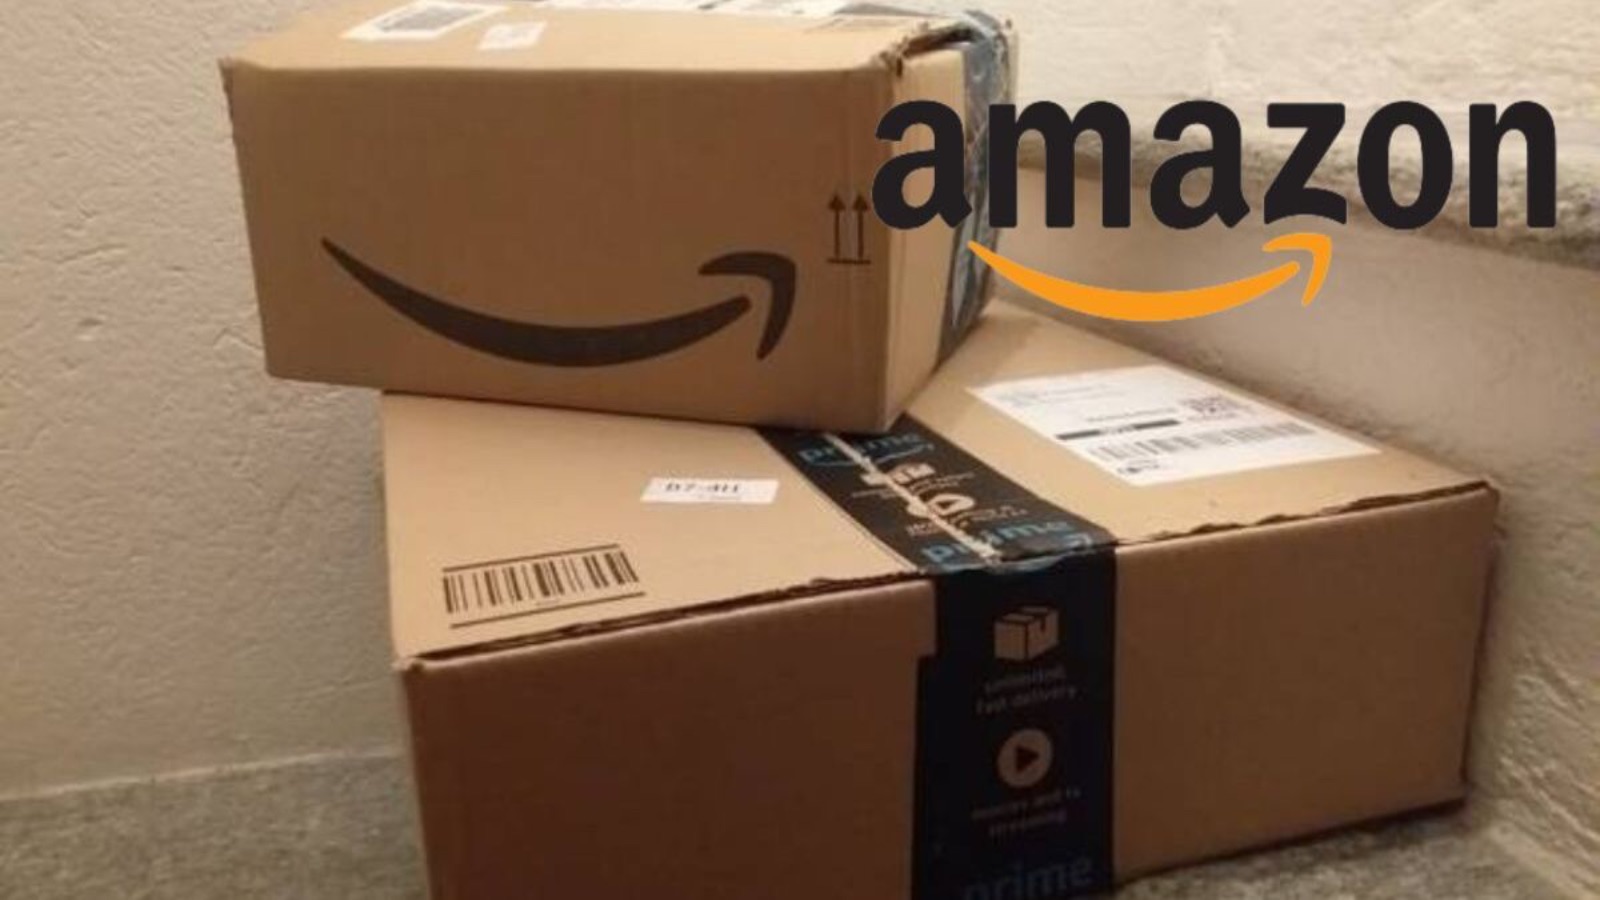 Amazon, nuove promo al 70% di sconto sui telefoni e sui PC